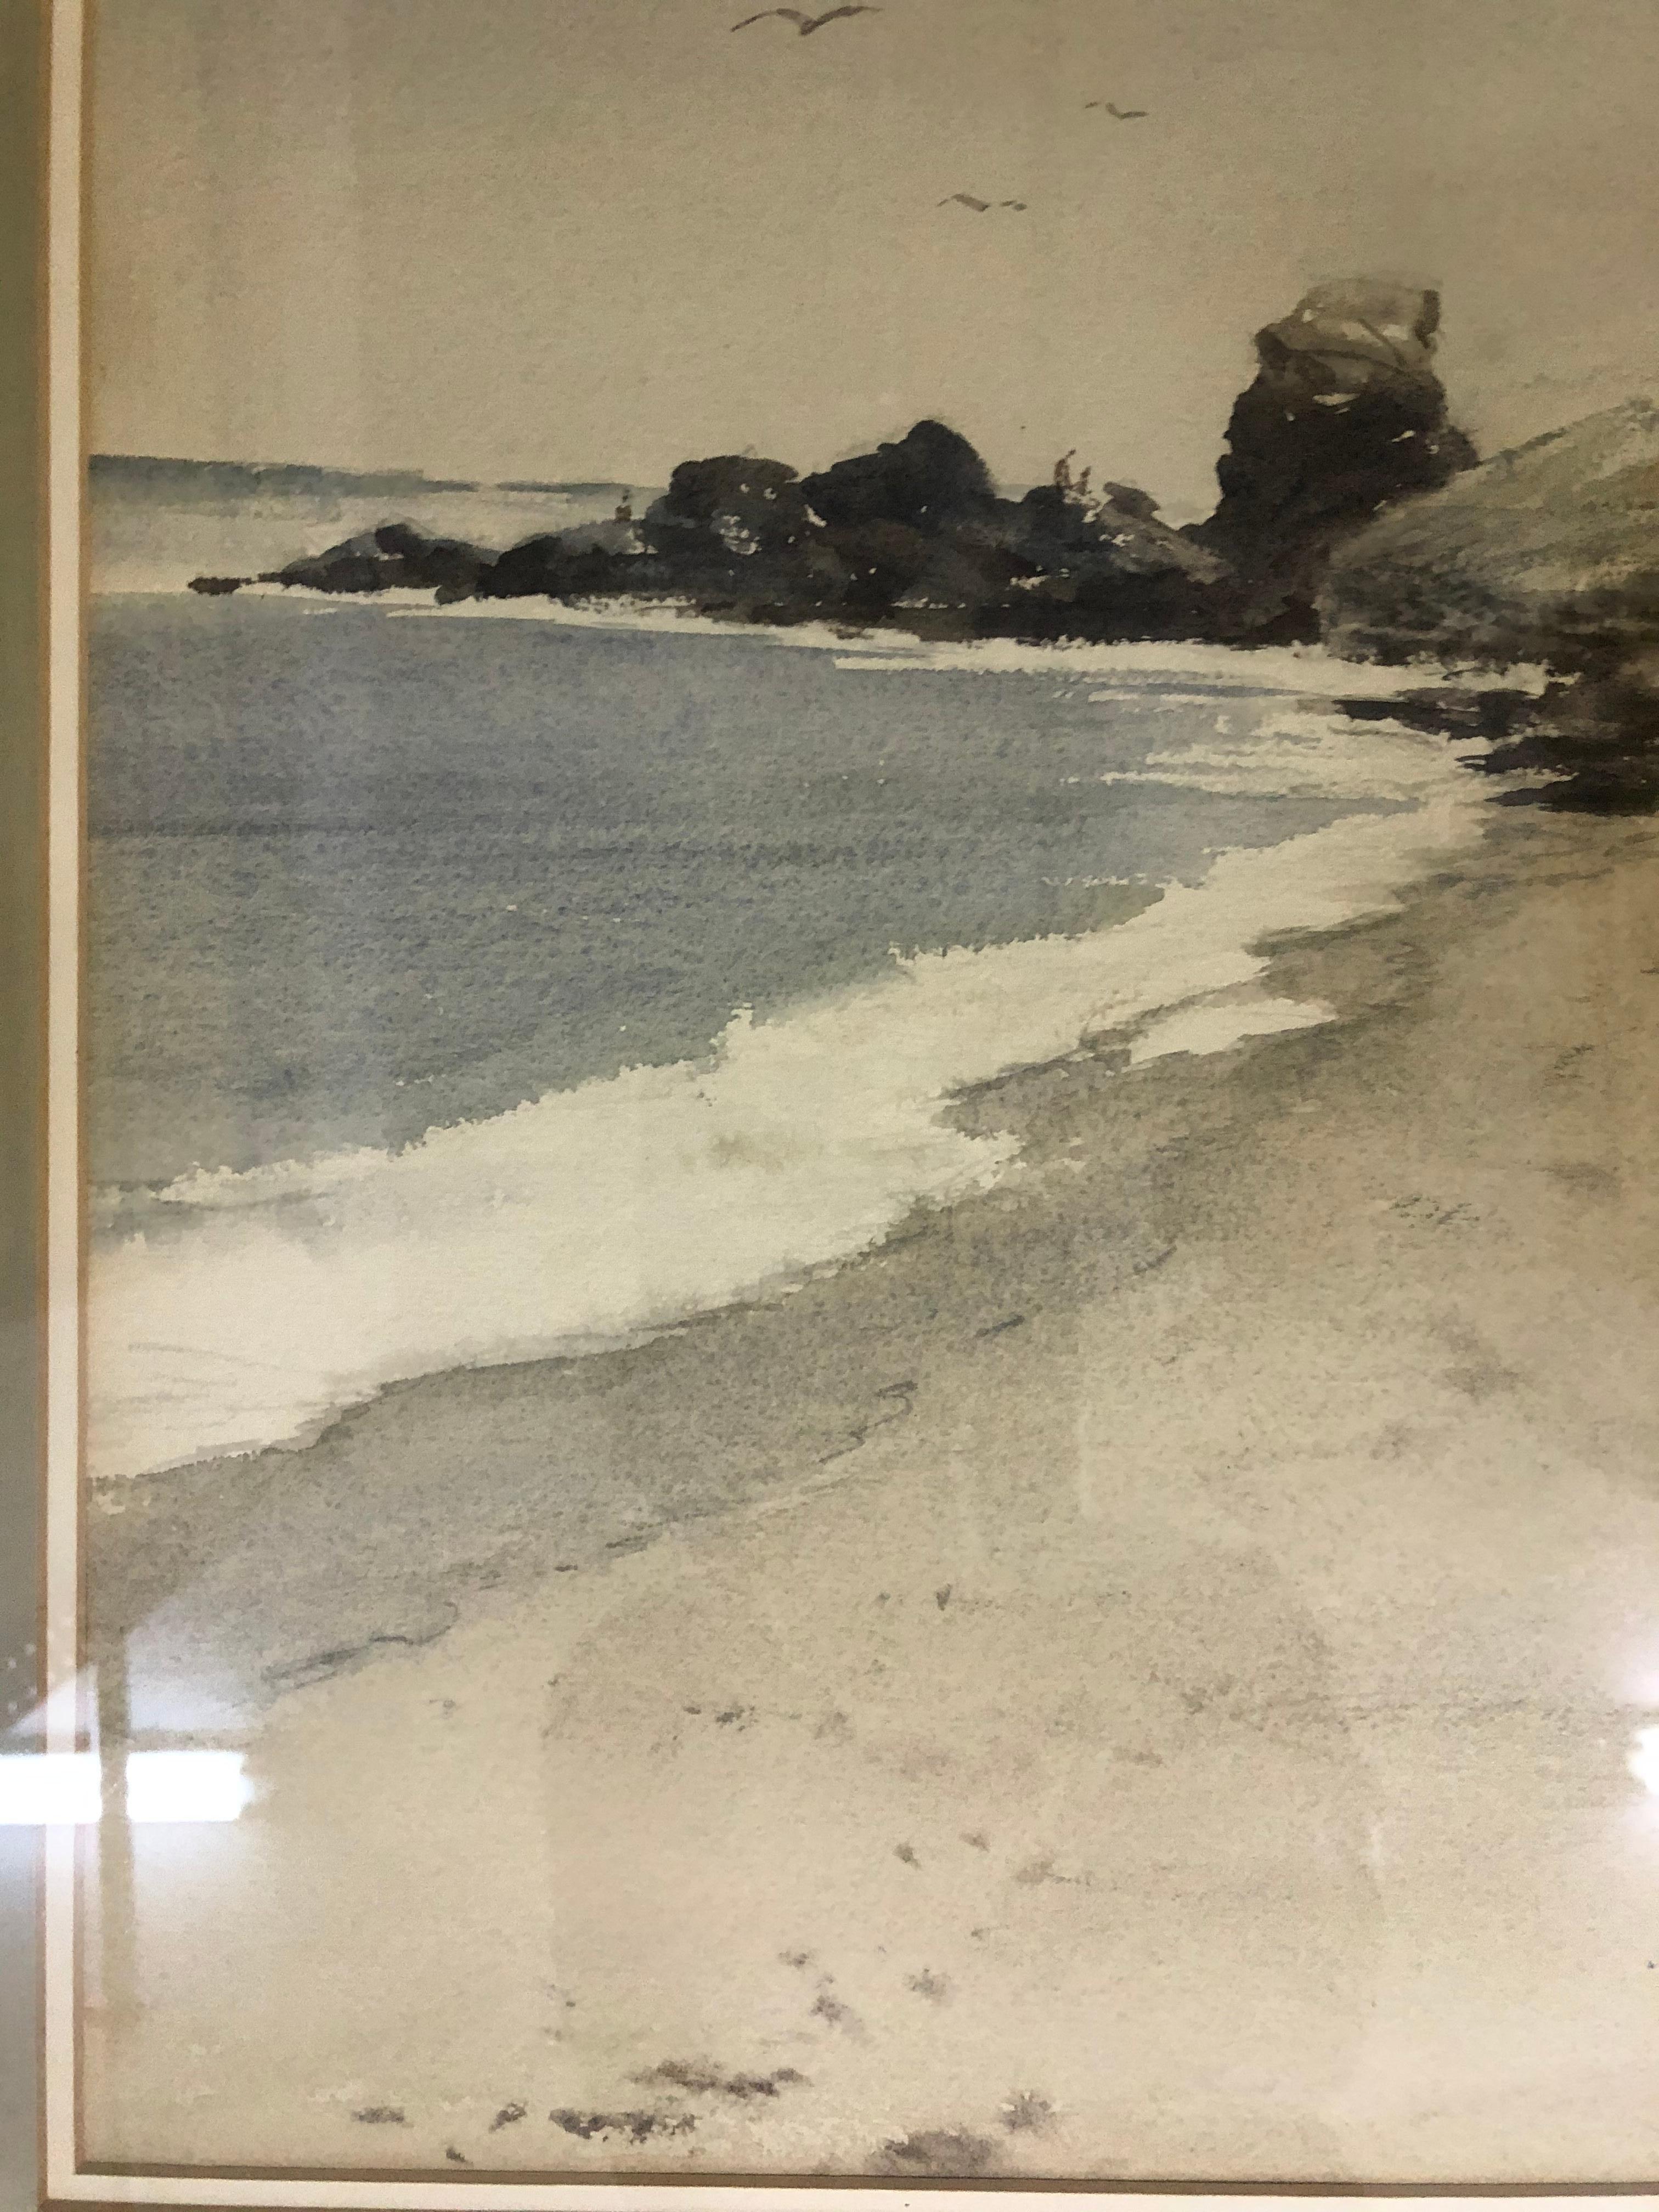 Charles Kinghan: 1895-1984. Nicht gelisteter amerikanischer Künstler mit Auktionsergebnissen über 2100 $. Dieses fantastische Aquarell eines Strandes in Corona Del Mar, Kalifornien, wurde wahrscheinlich Mitte des 20. Jahrhunderts gemalt. Es misst